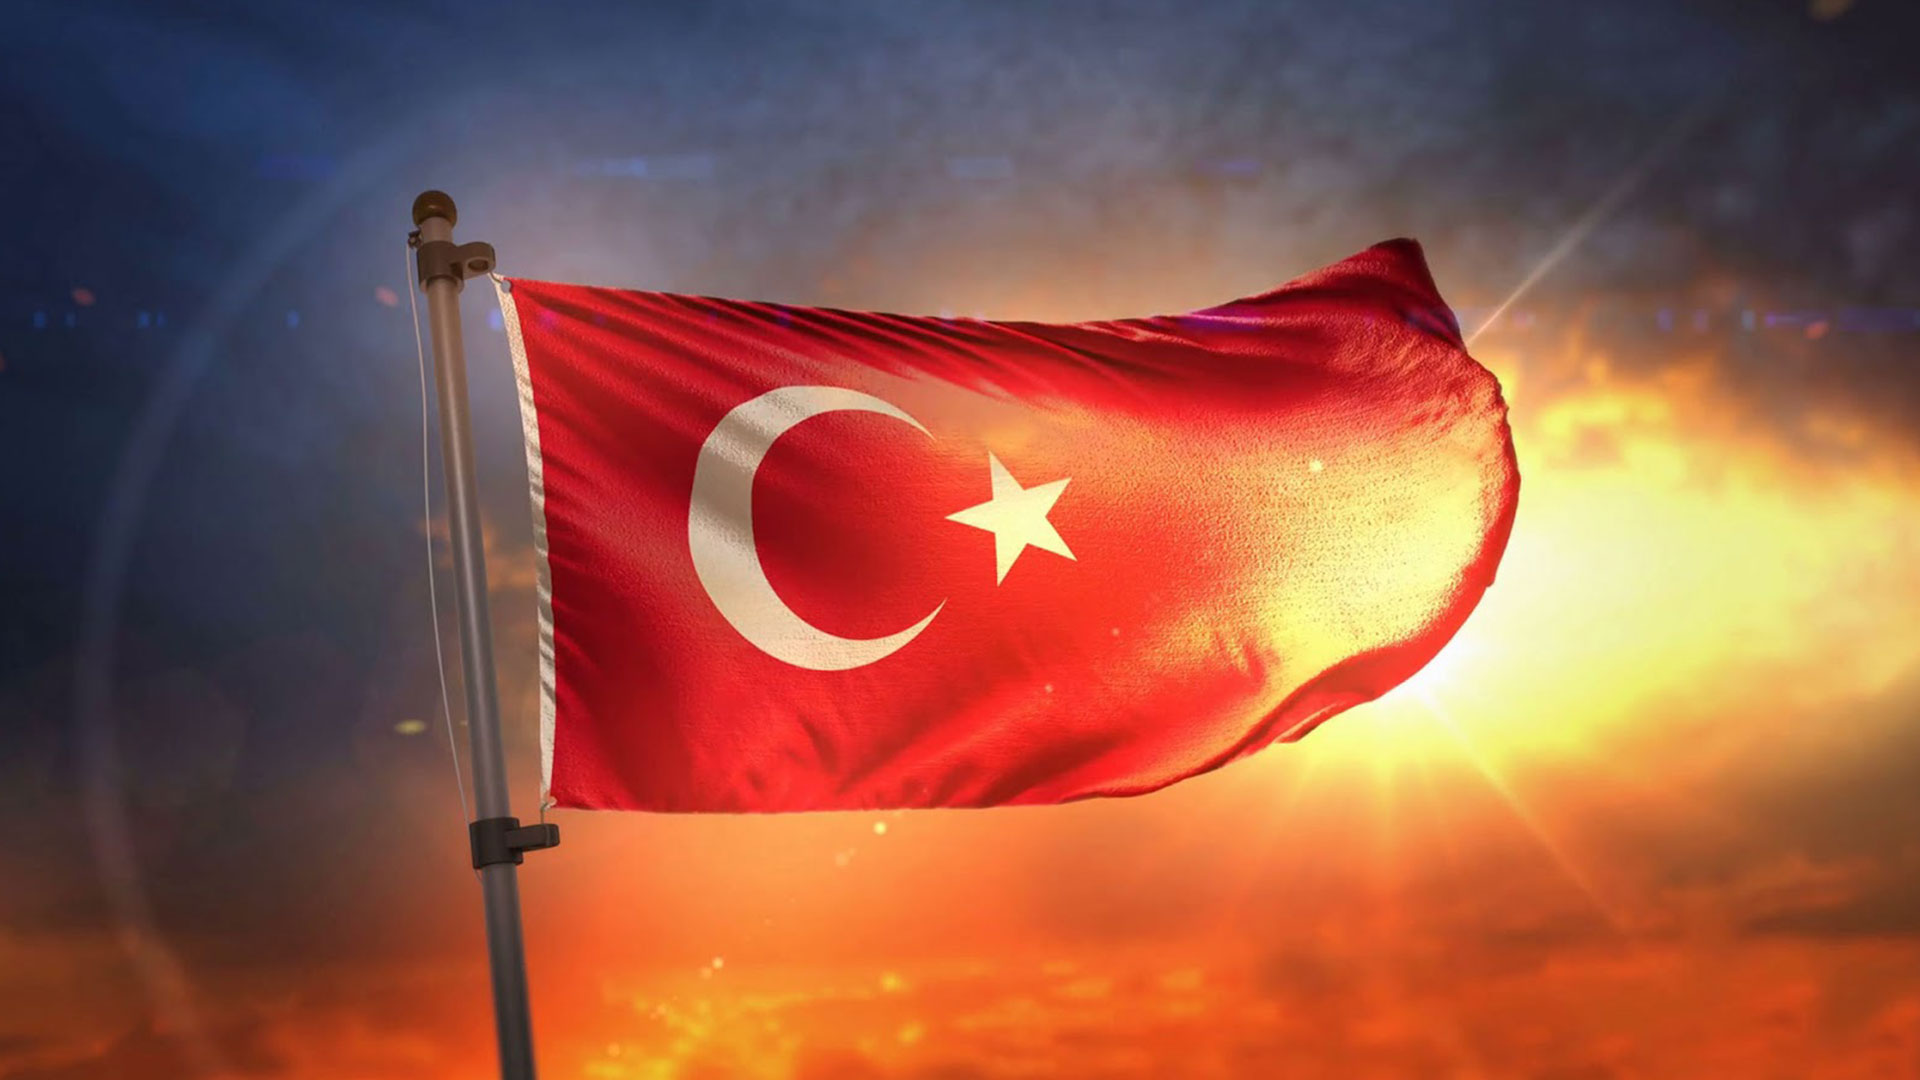 turk bayragi resimleri 2020 18